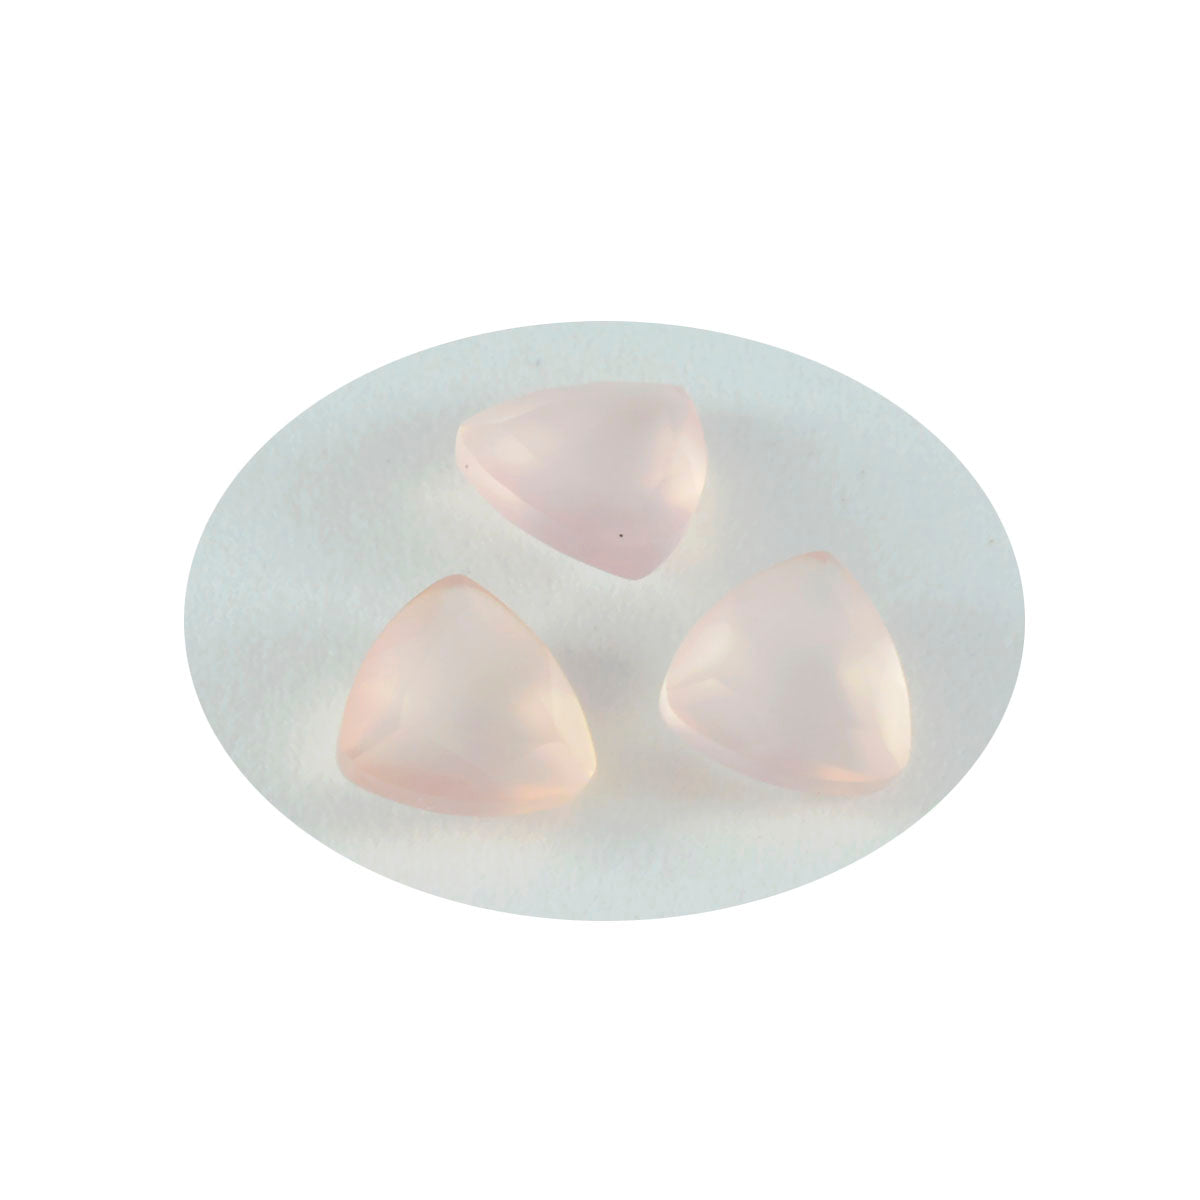 riyogems 1 pieza de cuarzo rosa facetado de 9x9 mm con forma de billón, piedra preciosa suelta de calidad A+